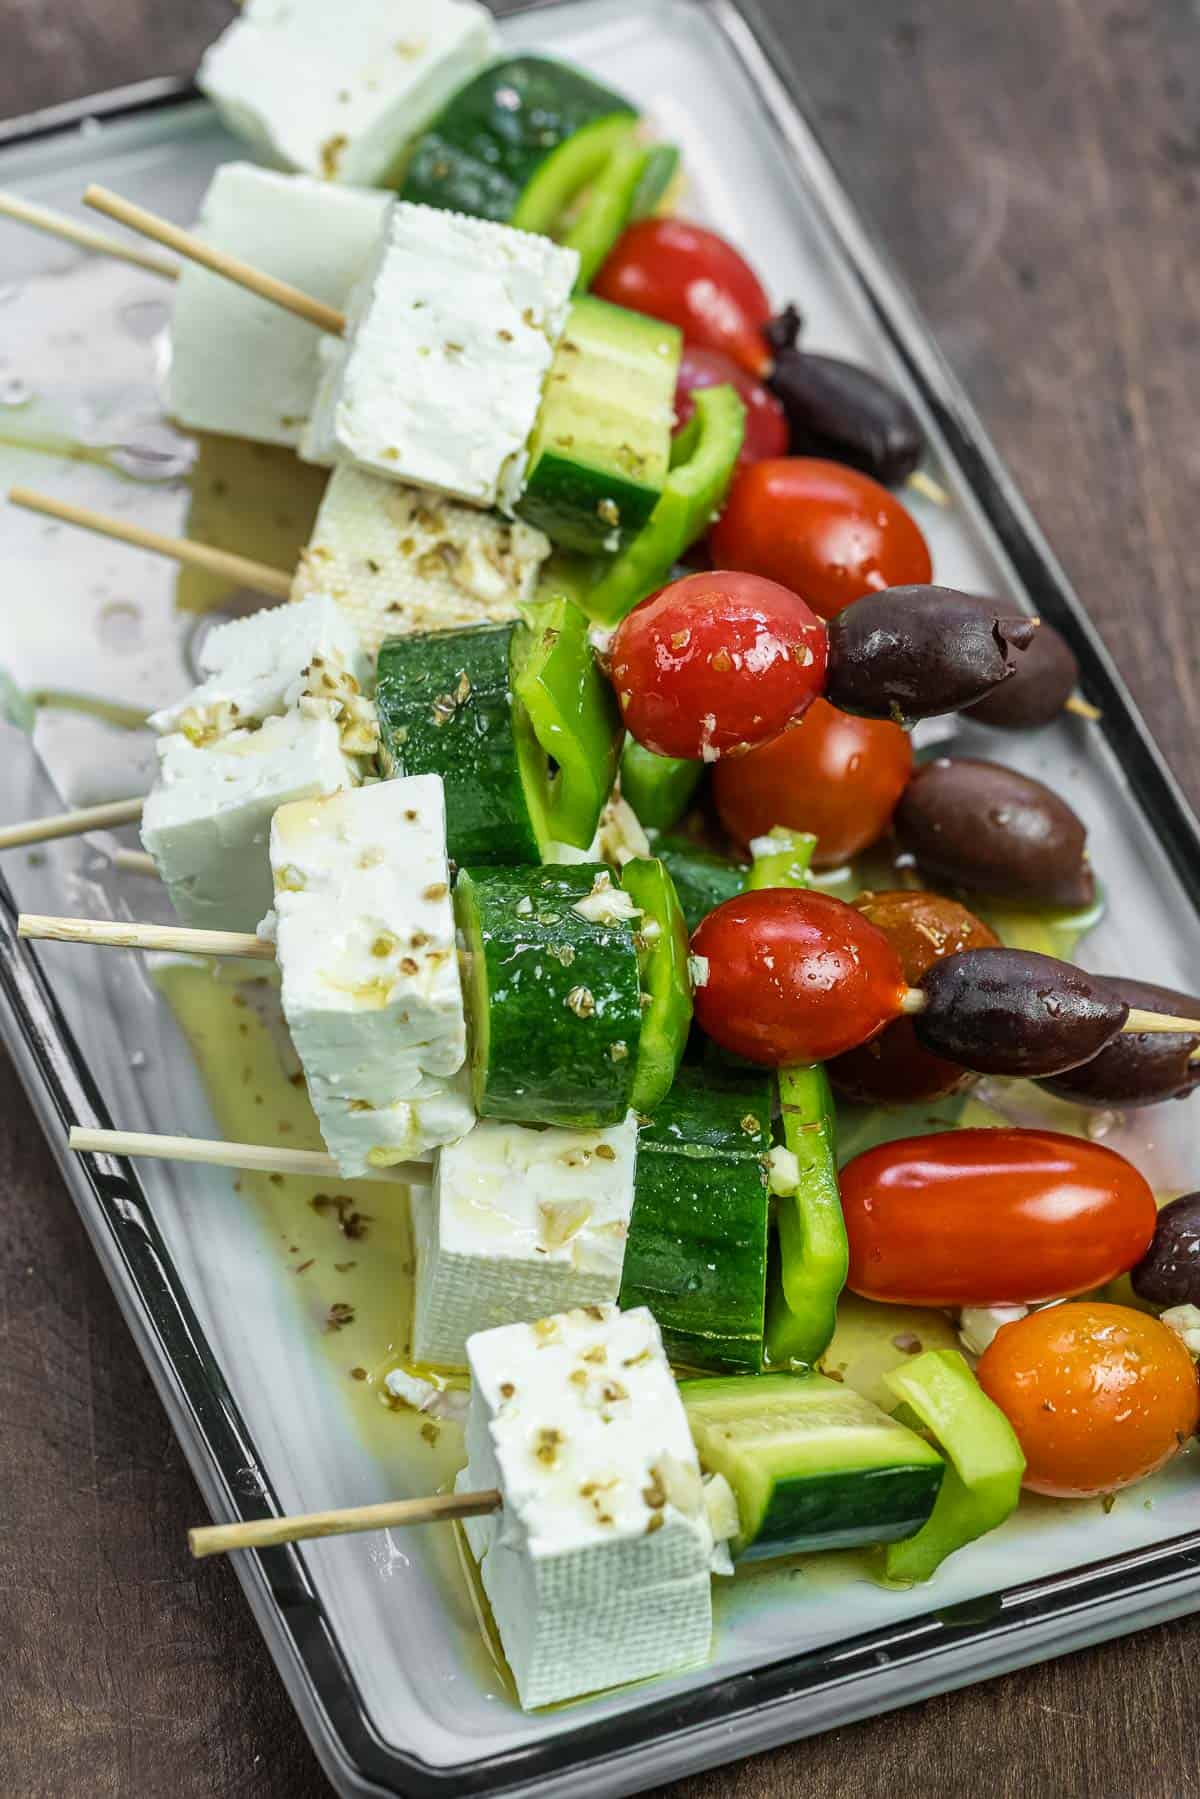 Greek Salad Skewers (Party Favorite!) - Little Broken